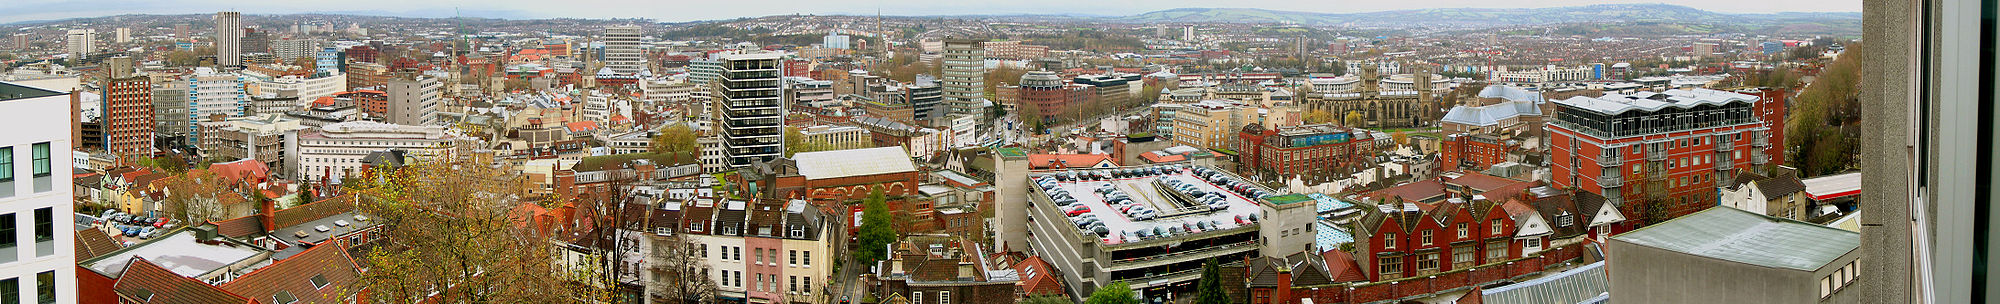 Panorama von Bristol